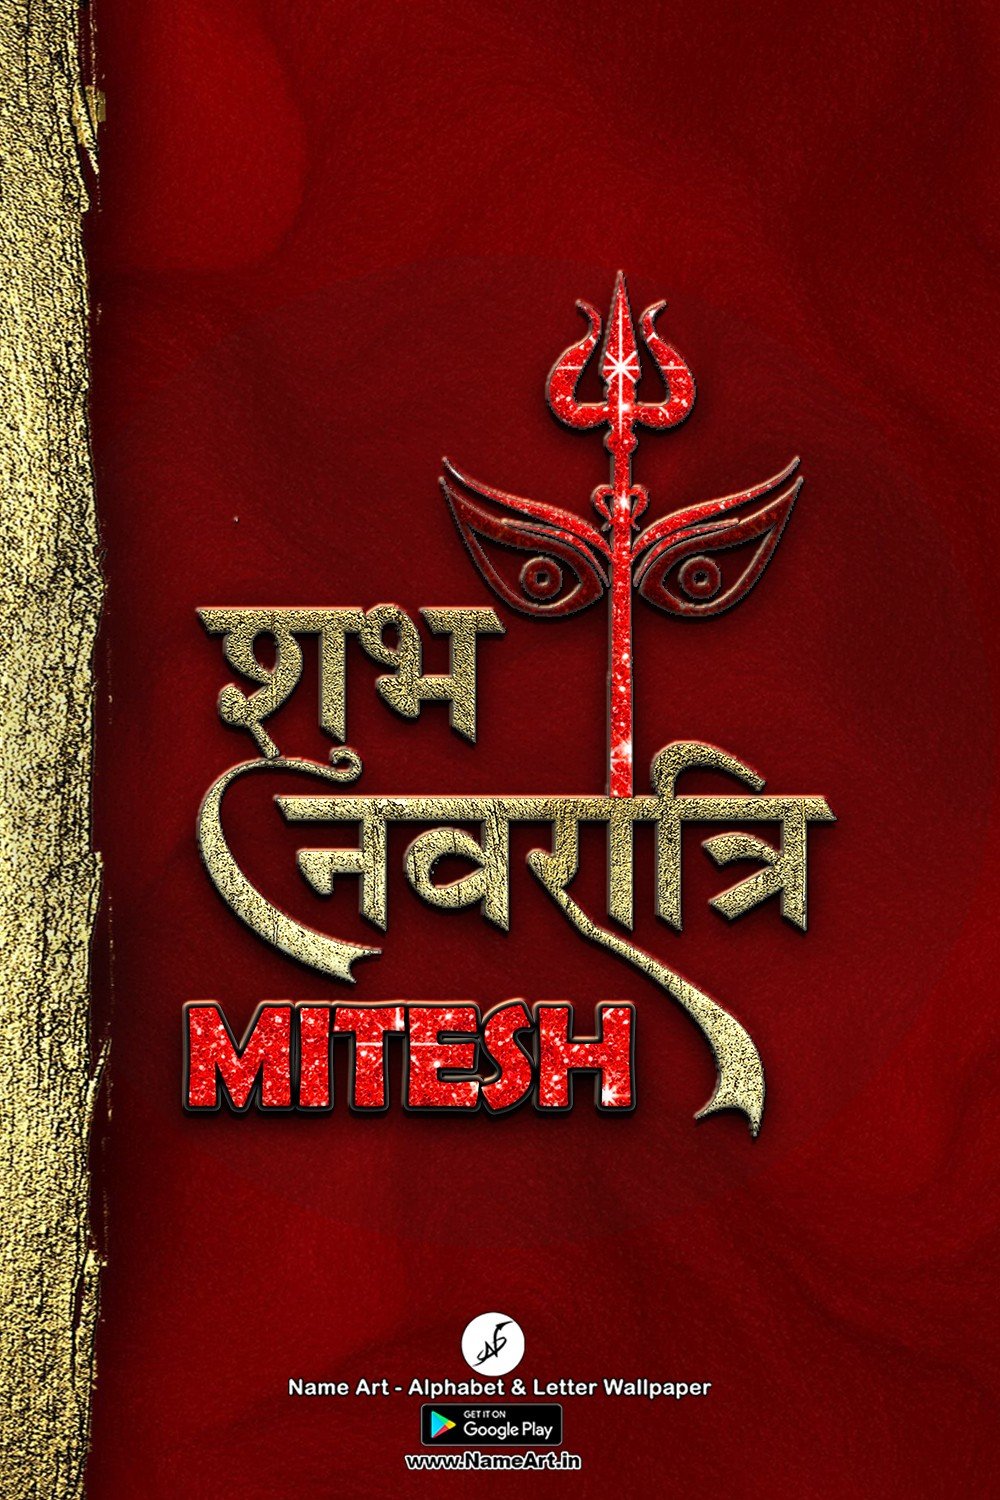 Mitesh Navratri Status | Whatsapp Status Mitesh Navratri Status |  Mitesh Navratri Status !! | New Whatsapp Status Mitesh Navratri Status Images |